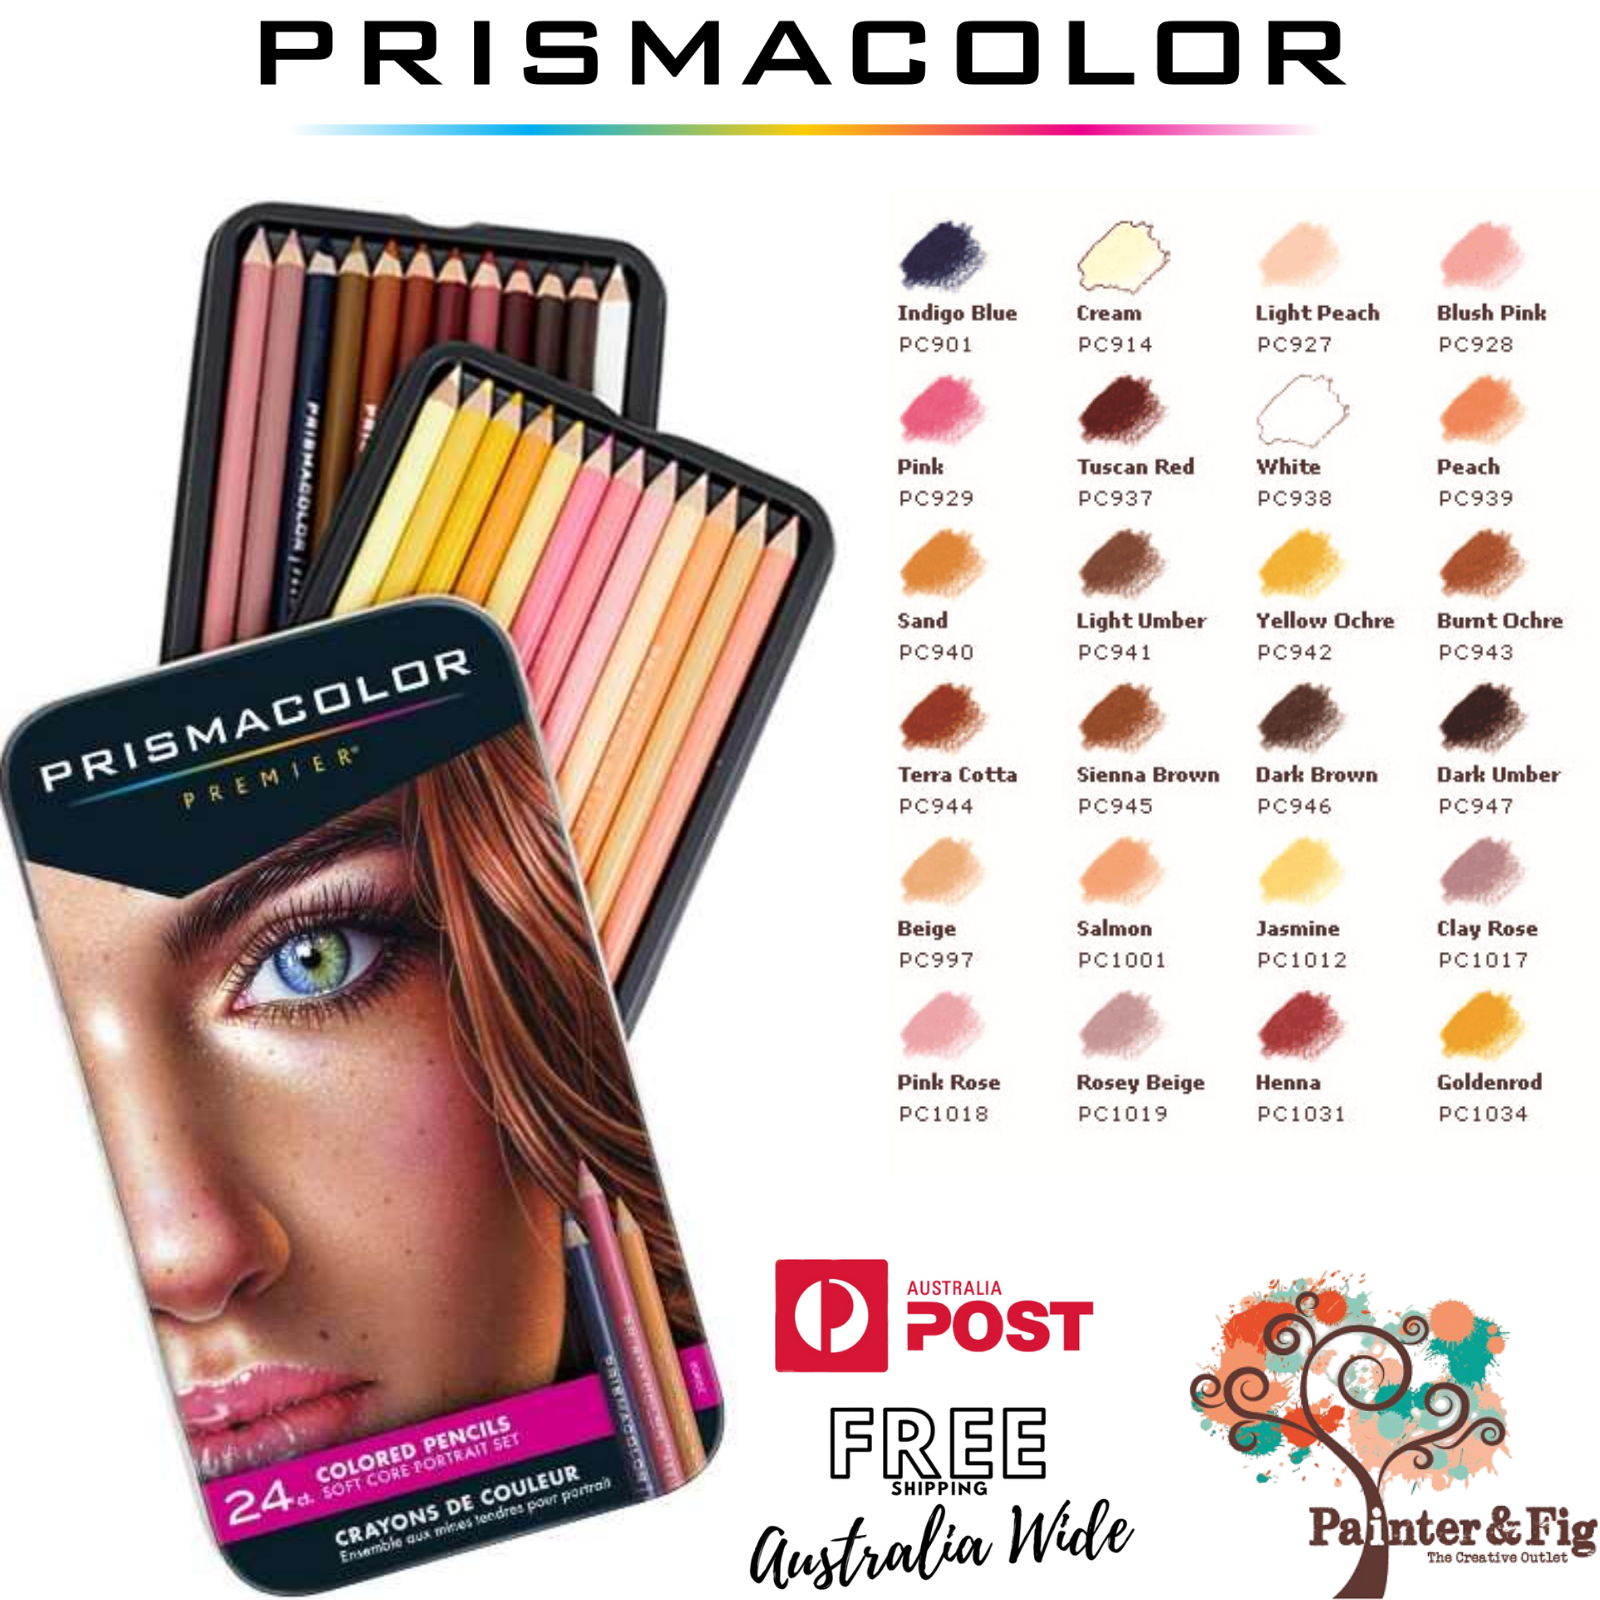 Prismacolor Premier Colored Pencils, Portrait Set, Soft Core, 24 Colours